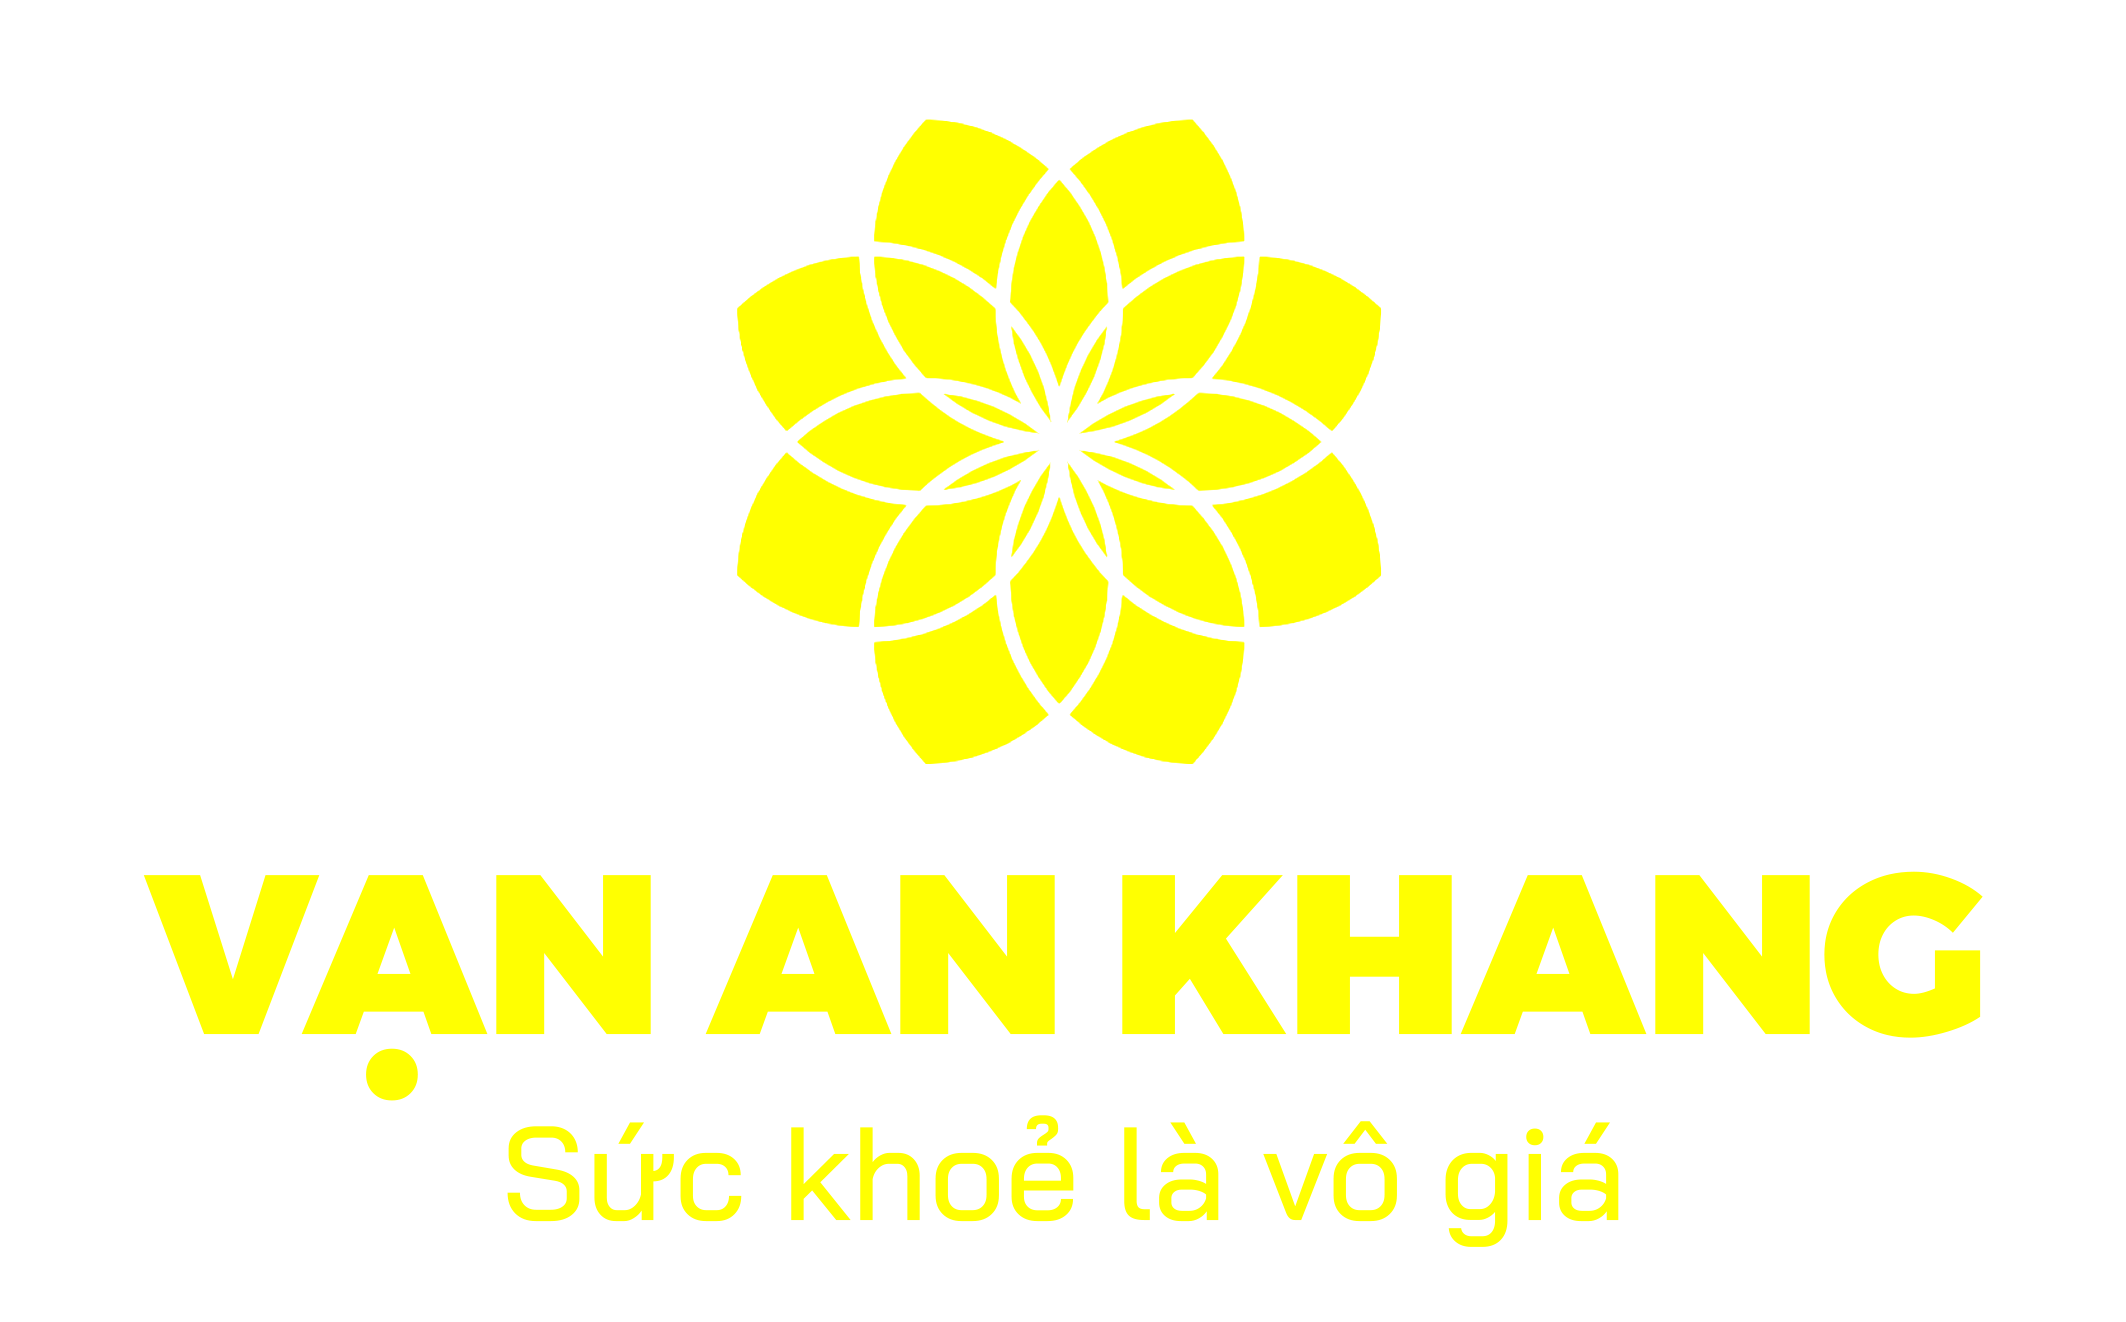 Vạn An Khang